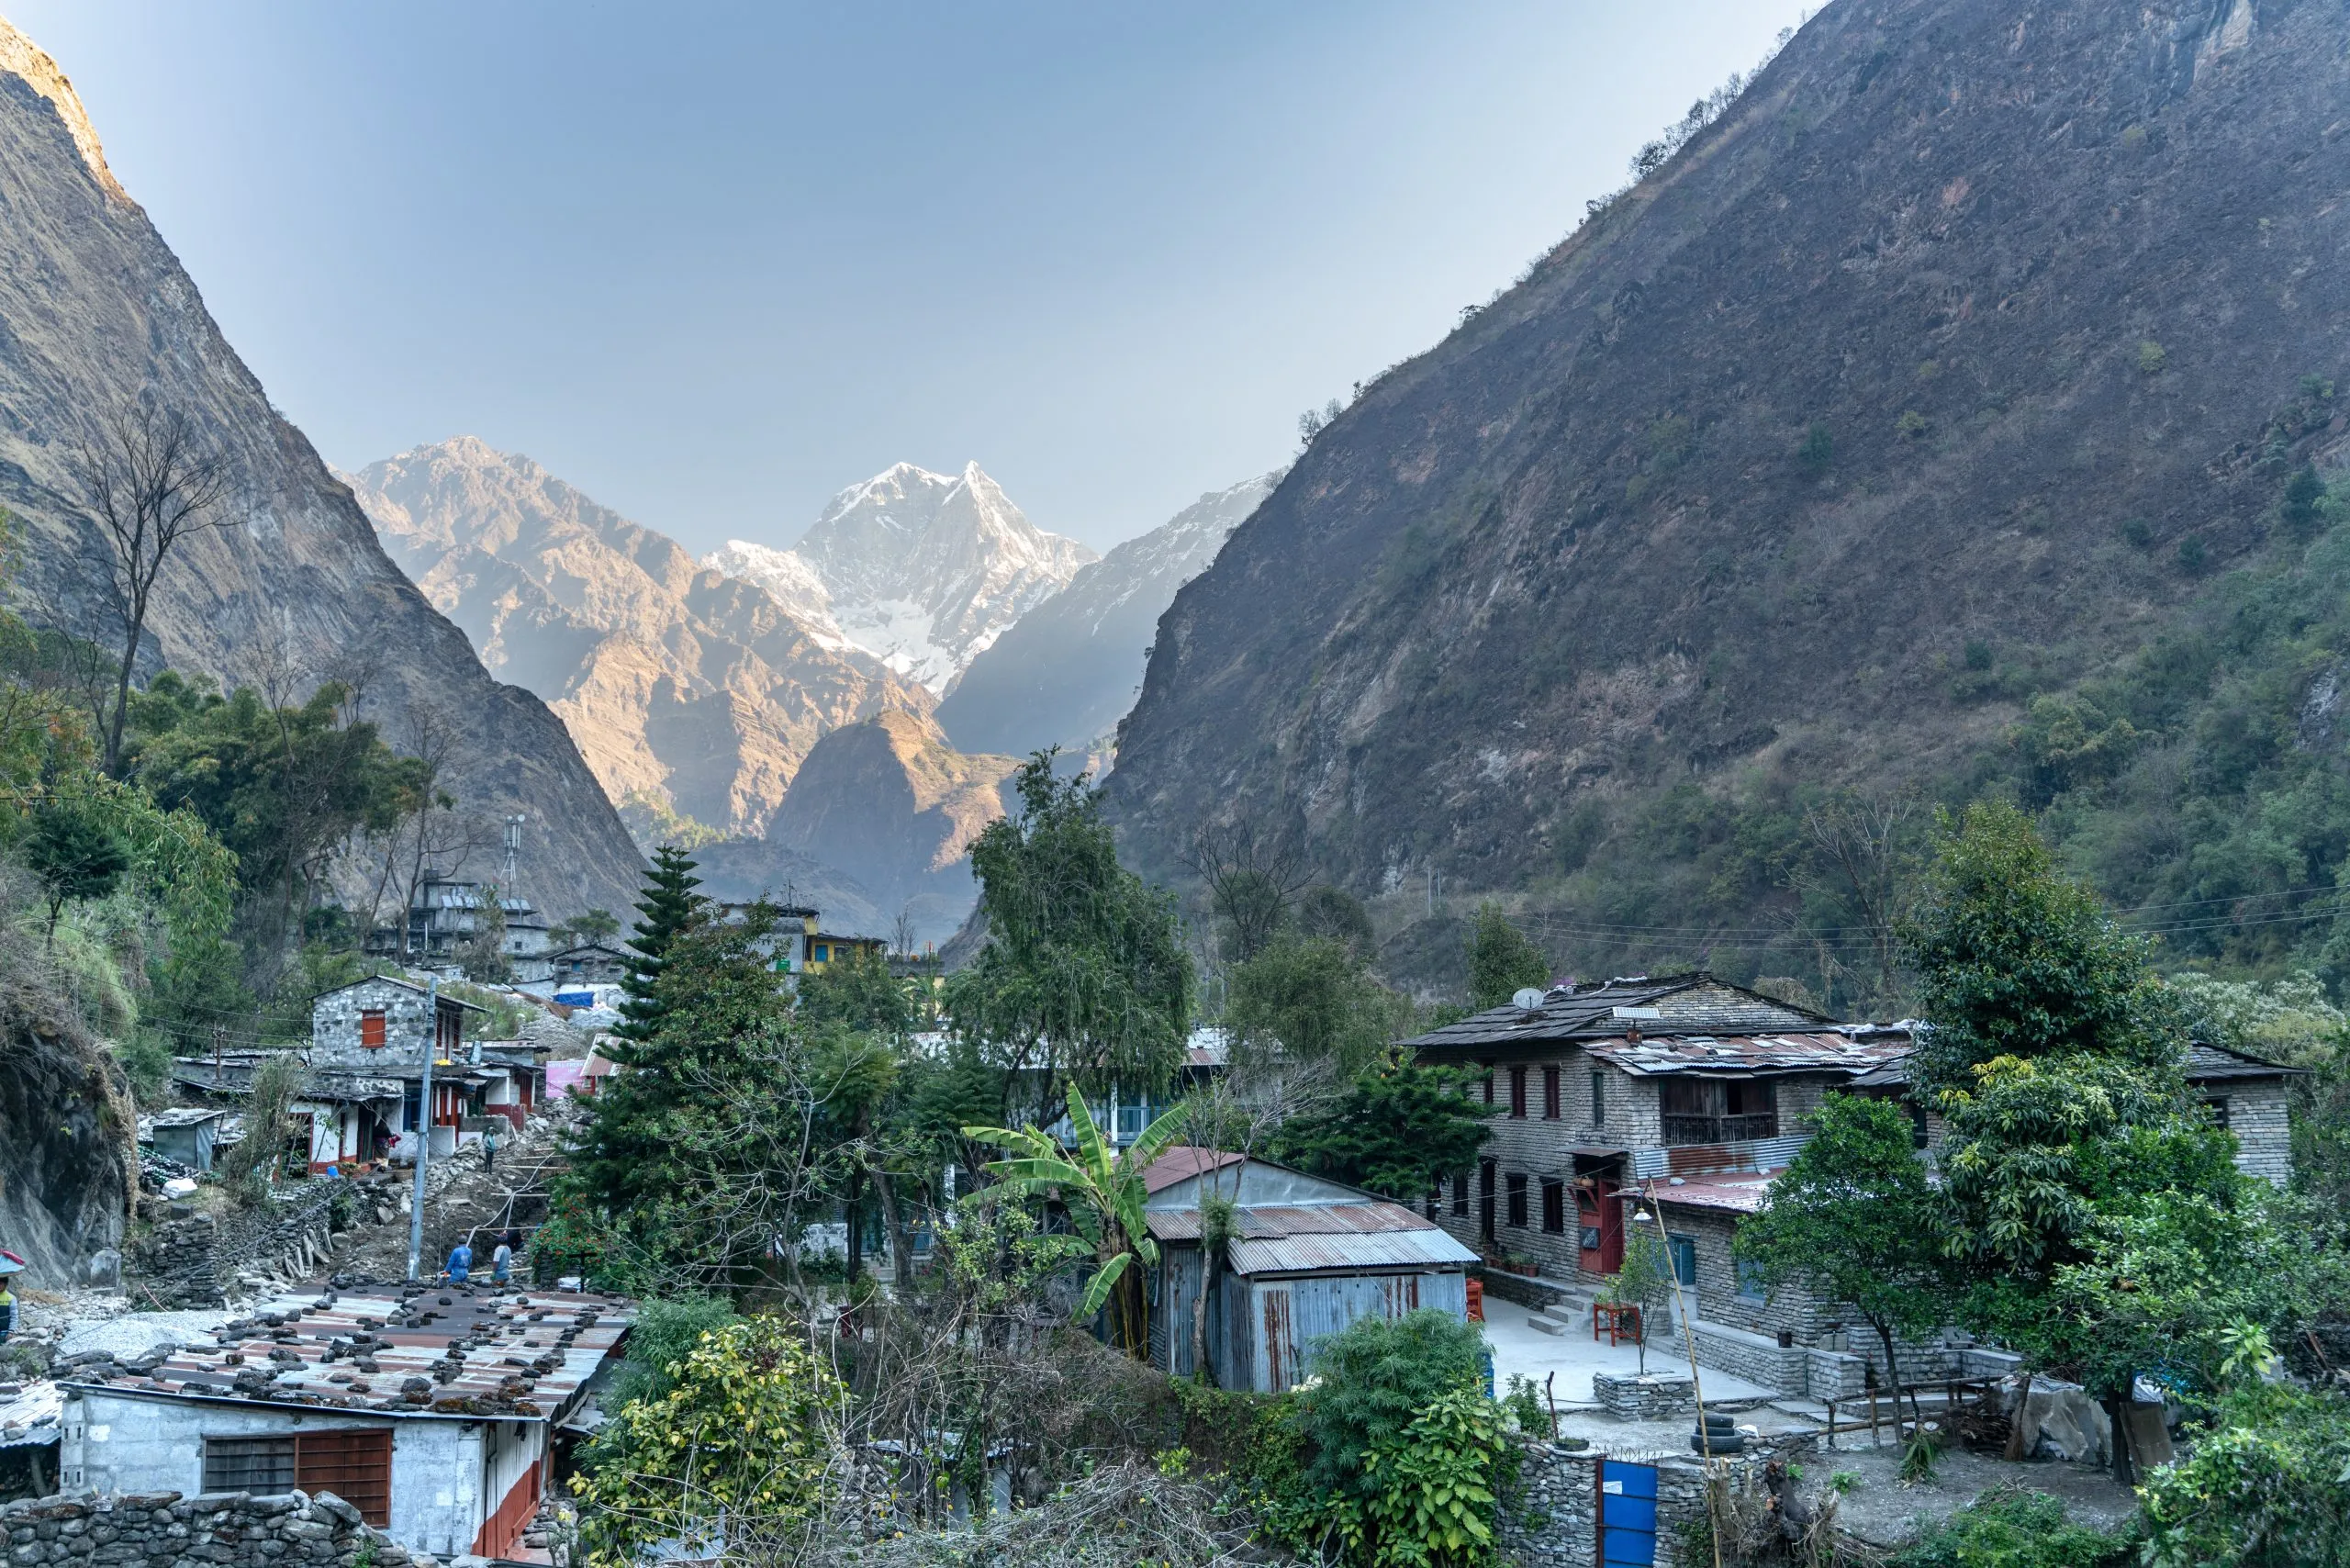 Tatopani/Nepal-11.03.2019:The view of Tatopani village